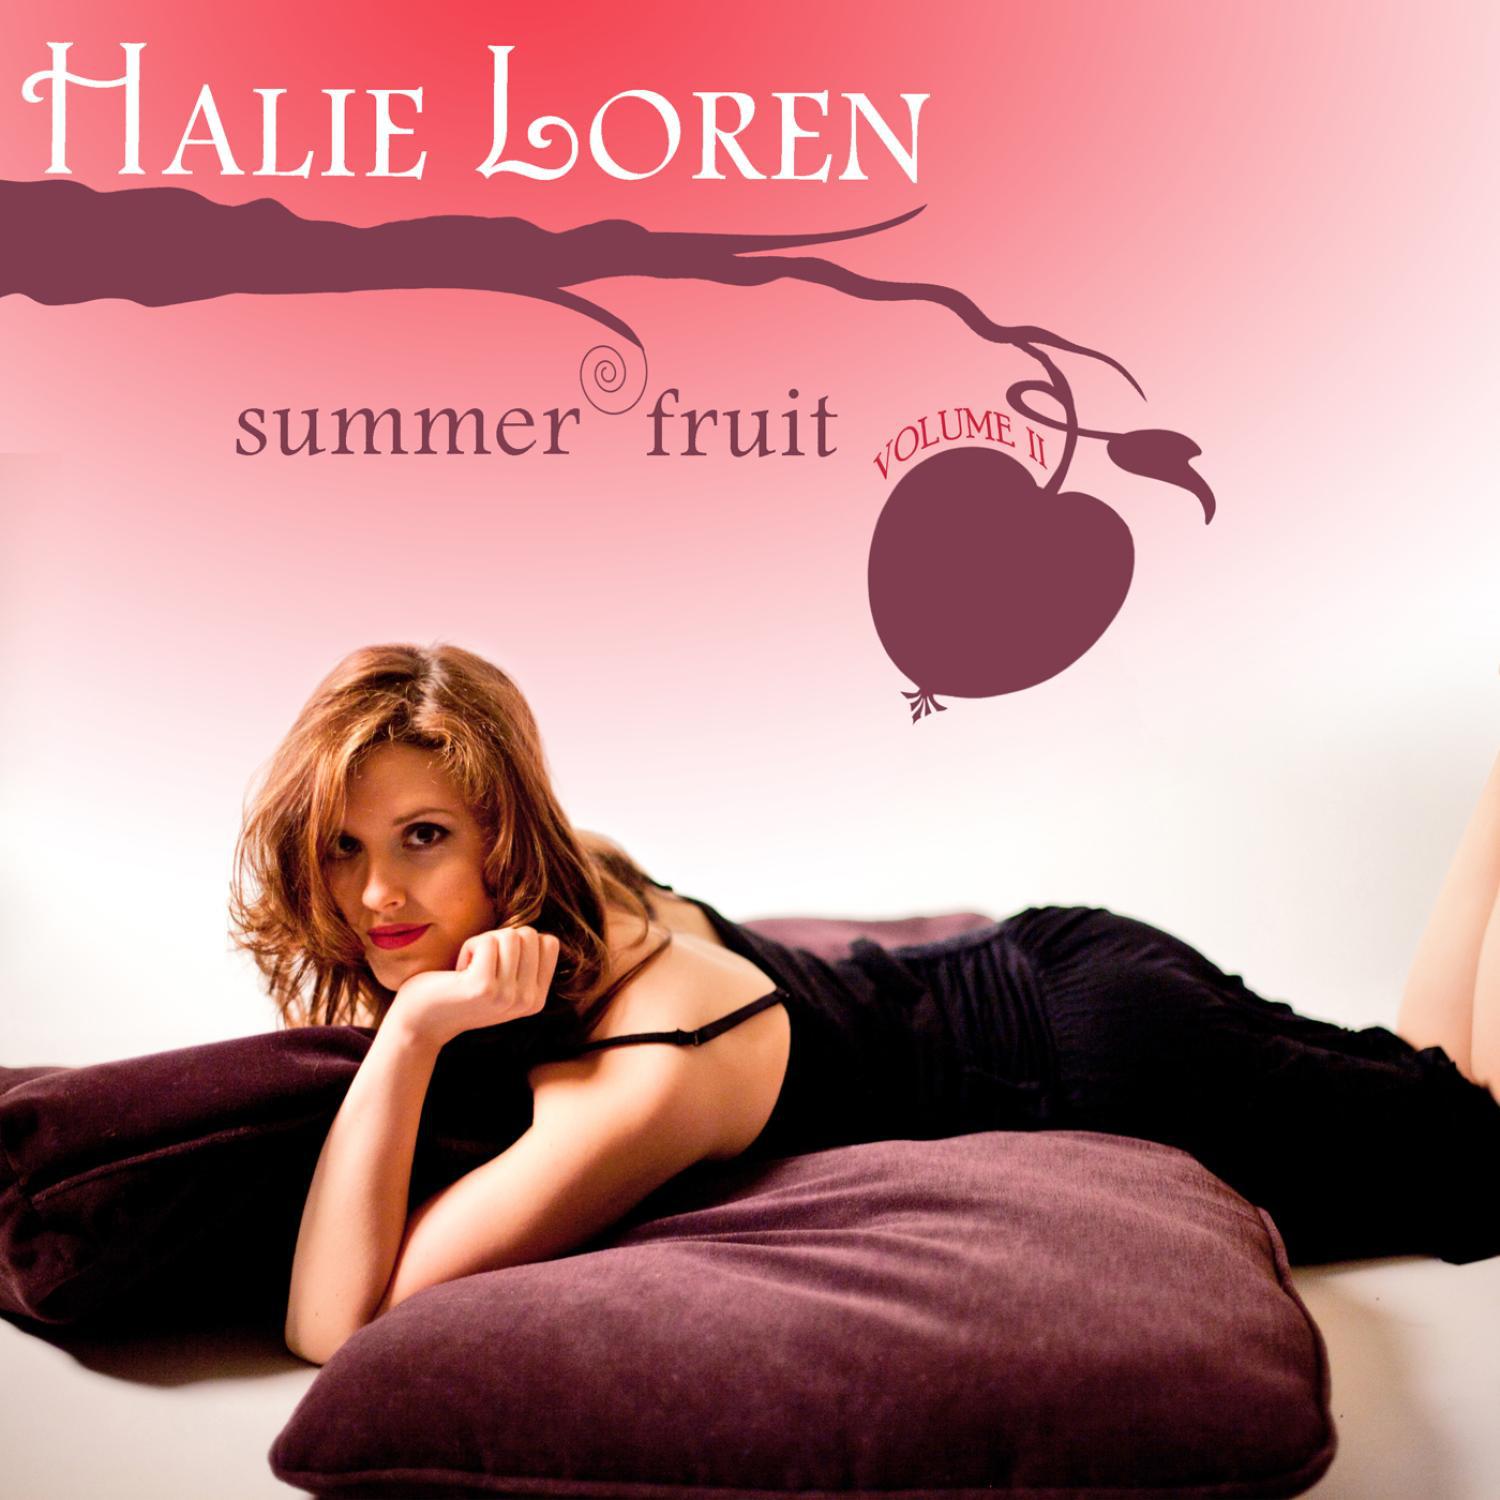 Summer Fruit Volume 2专辑